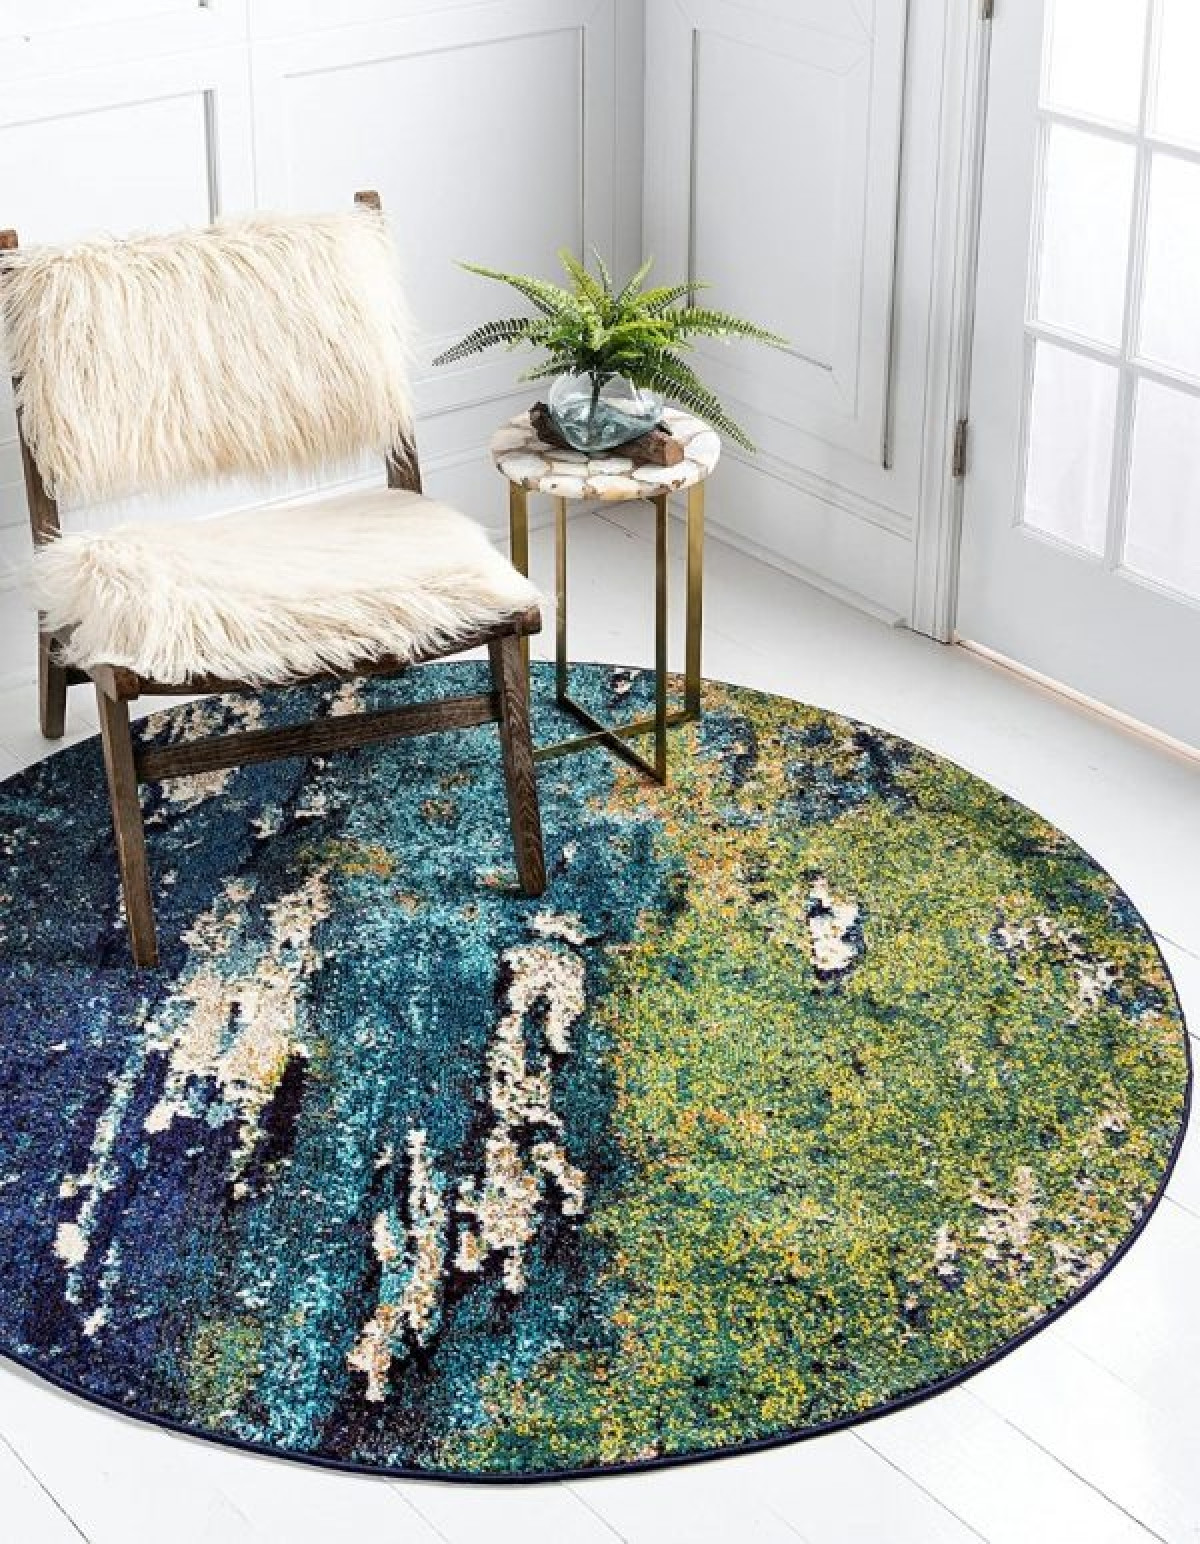 Hoạ tiết trừu tượng của tấm thảm lấy cảm hứng từ thế giới tự nhiên và khiến chúng thành điểm nhấn sinh động trong căn phòng.